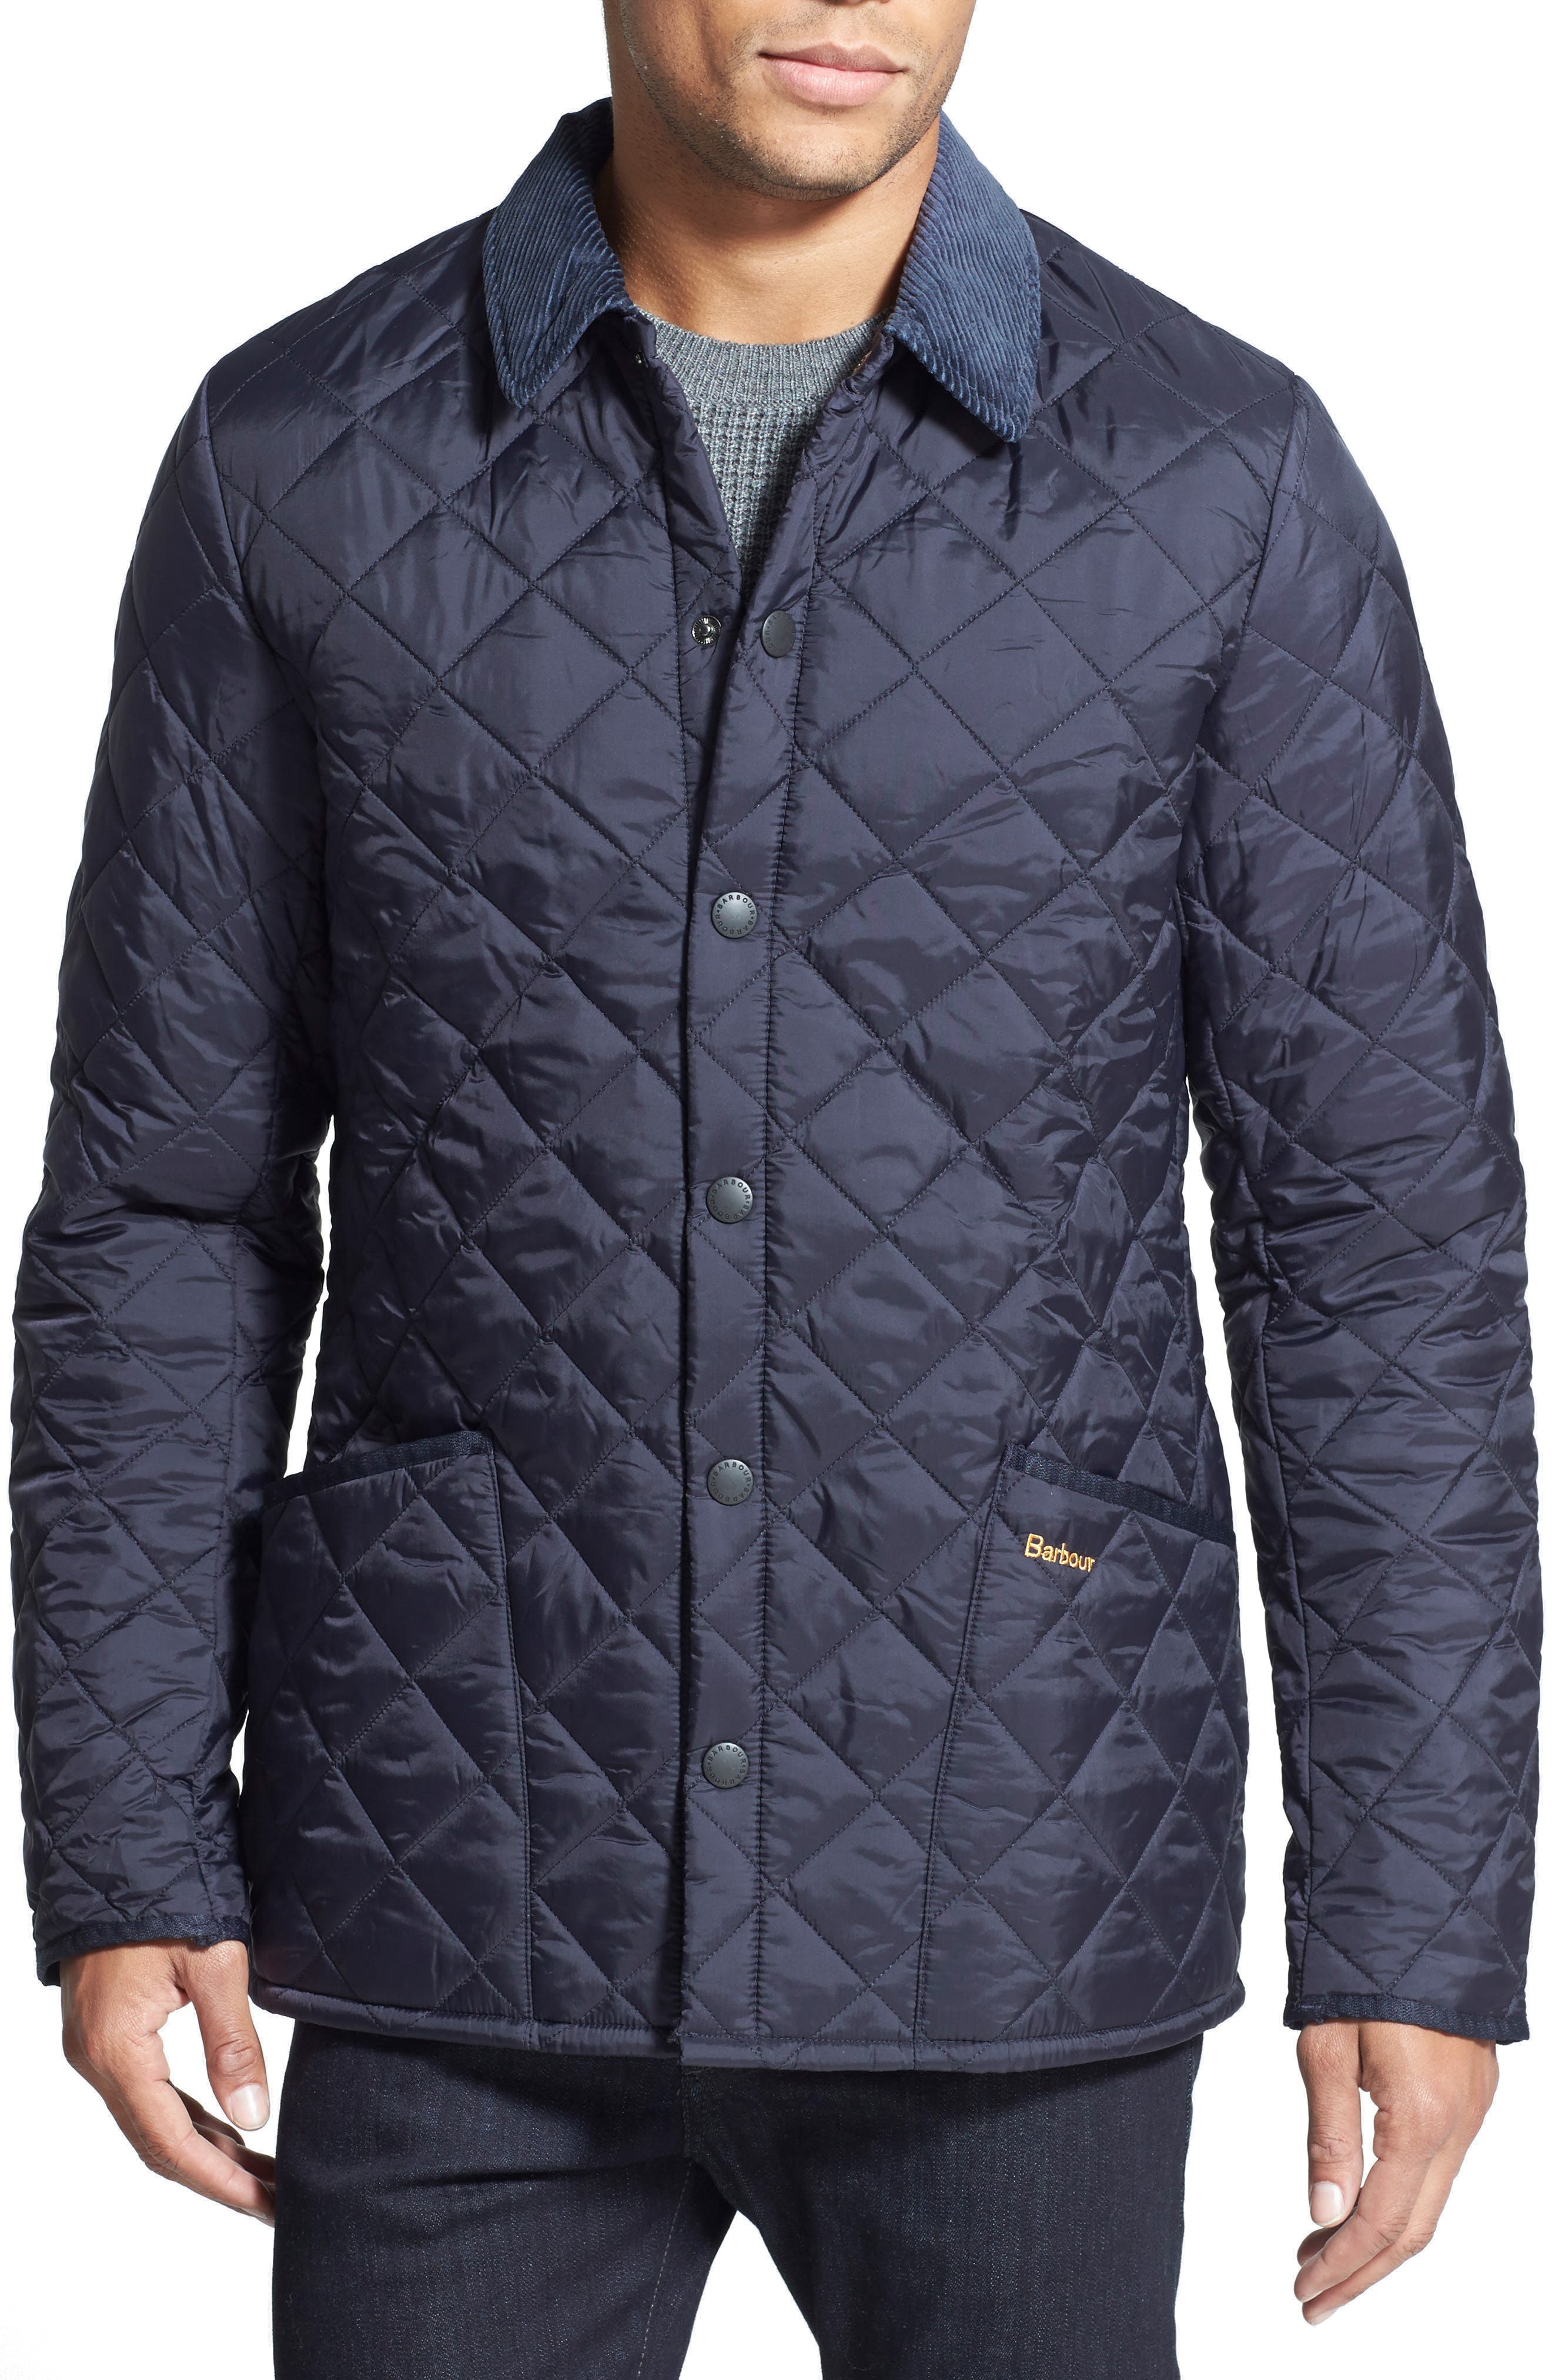 ARTFFEL Men Winter Warm Plus Size Plain Down Quilted Jacket Coat Vest 